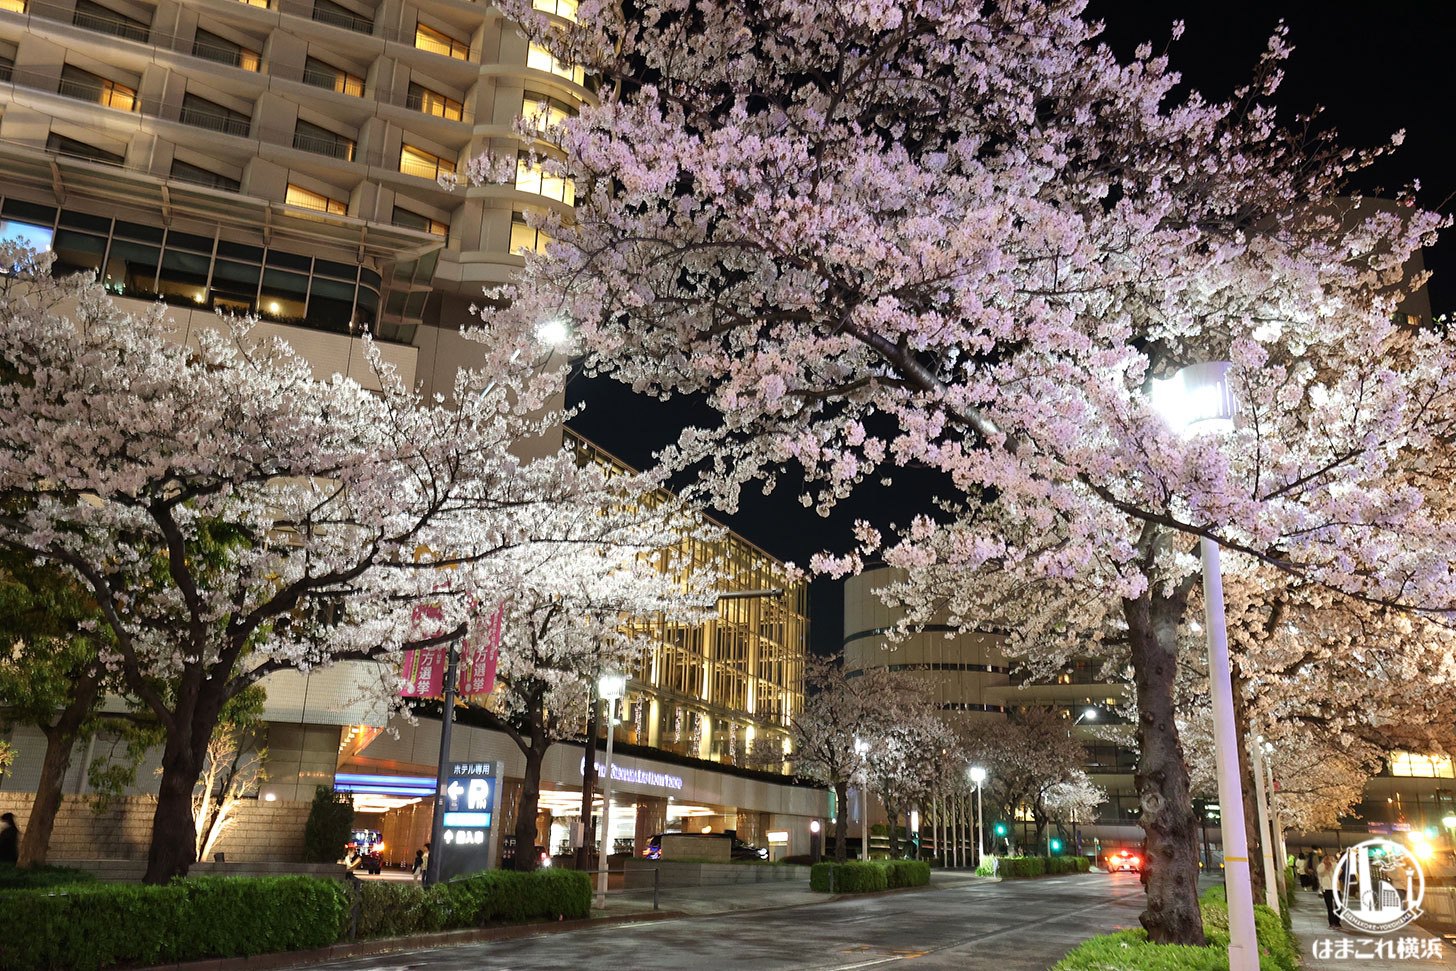 さくら通りの夜桜